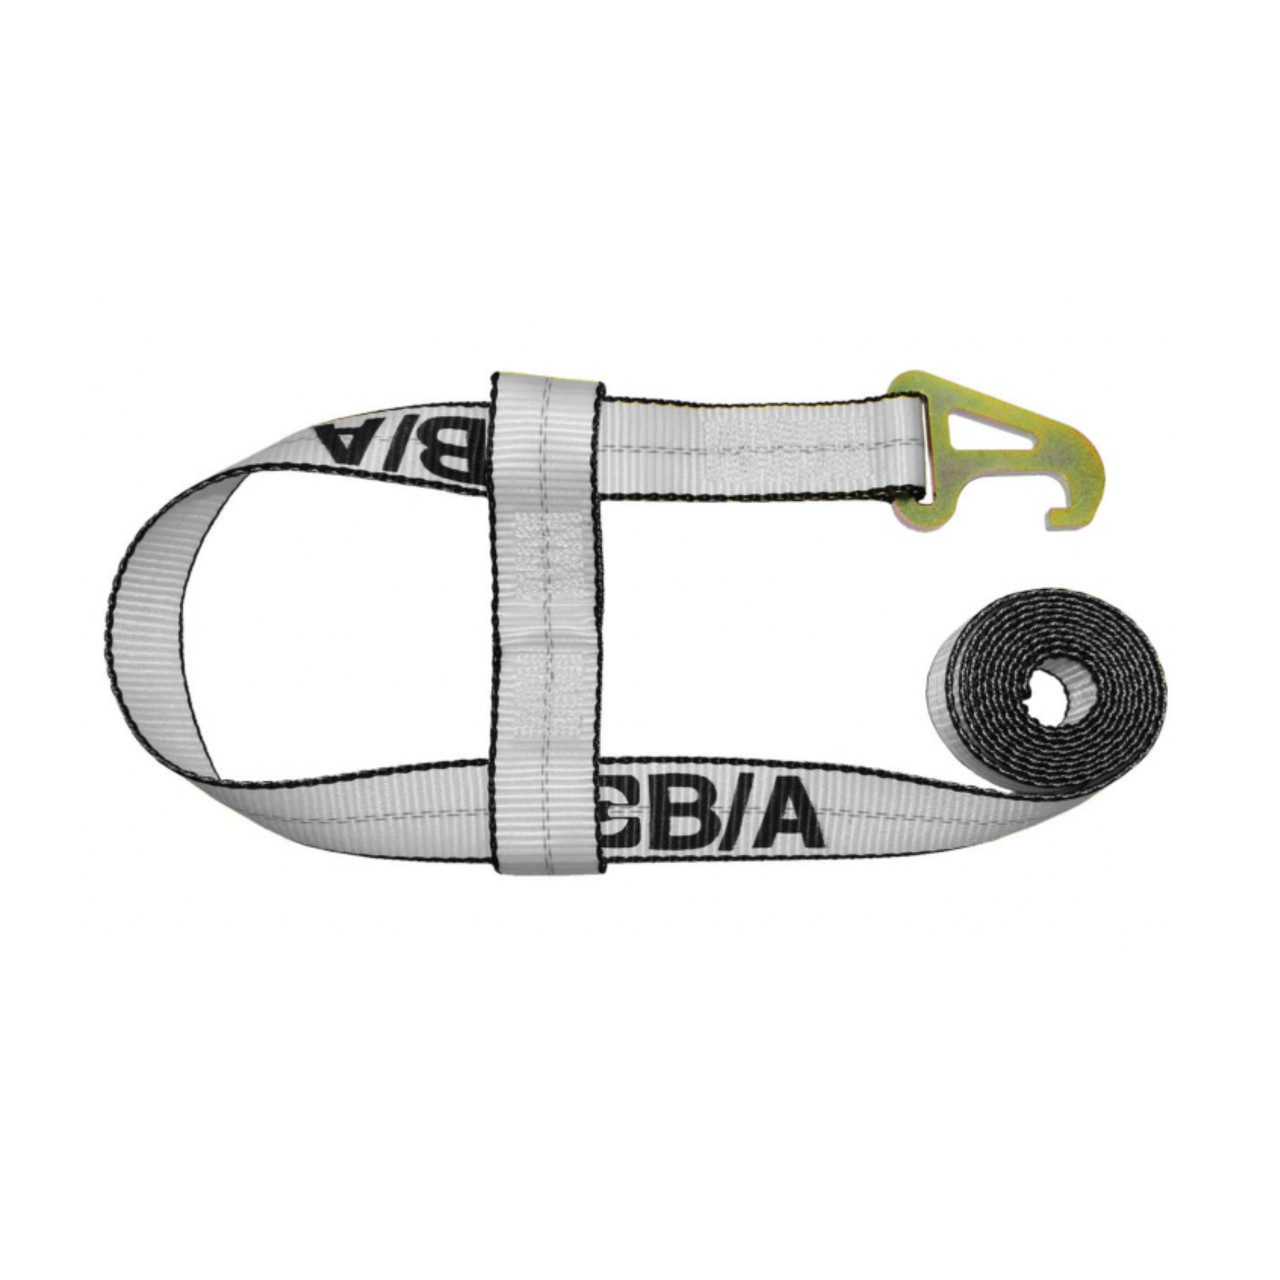 Adjustable Low Back Strap 4105 - 2 hooks - Black